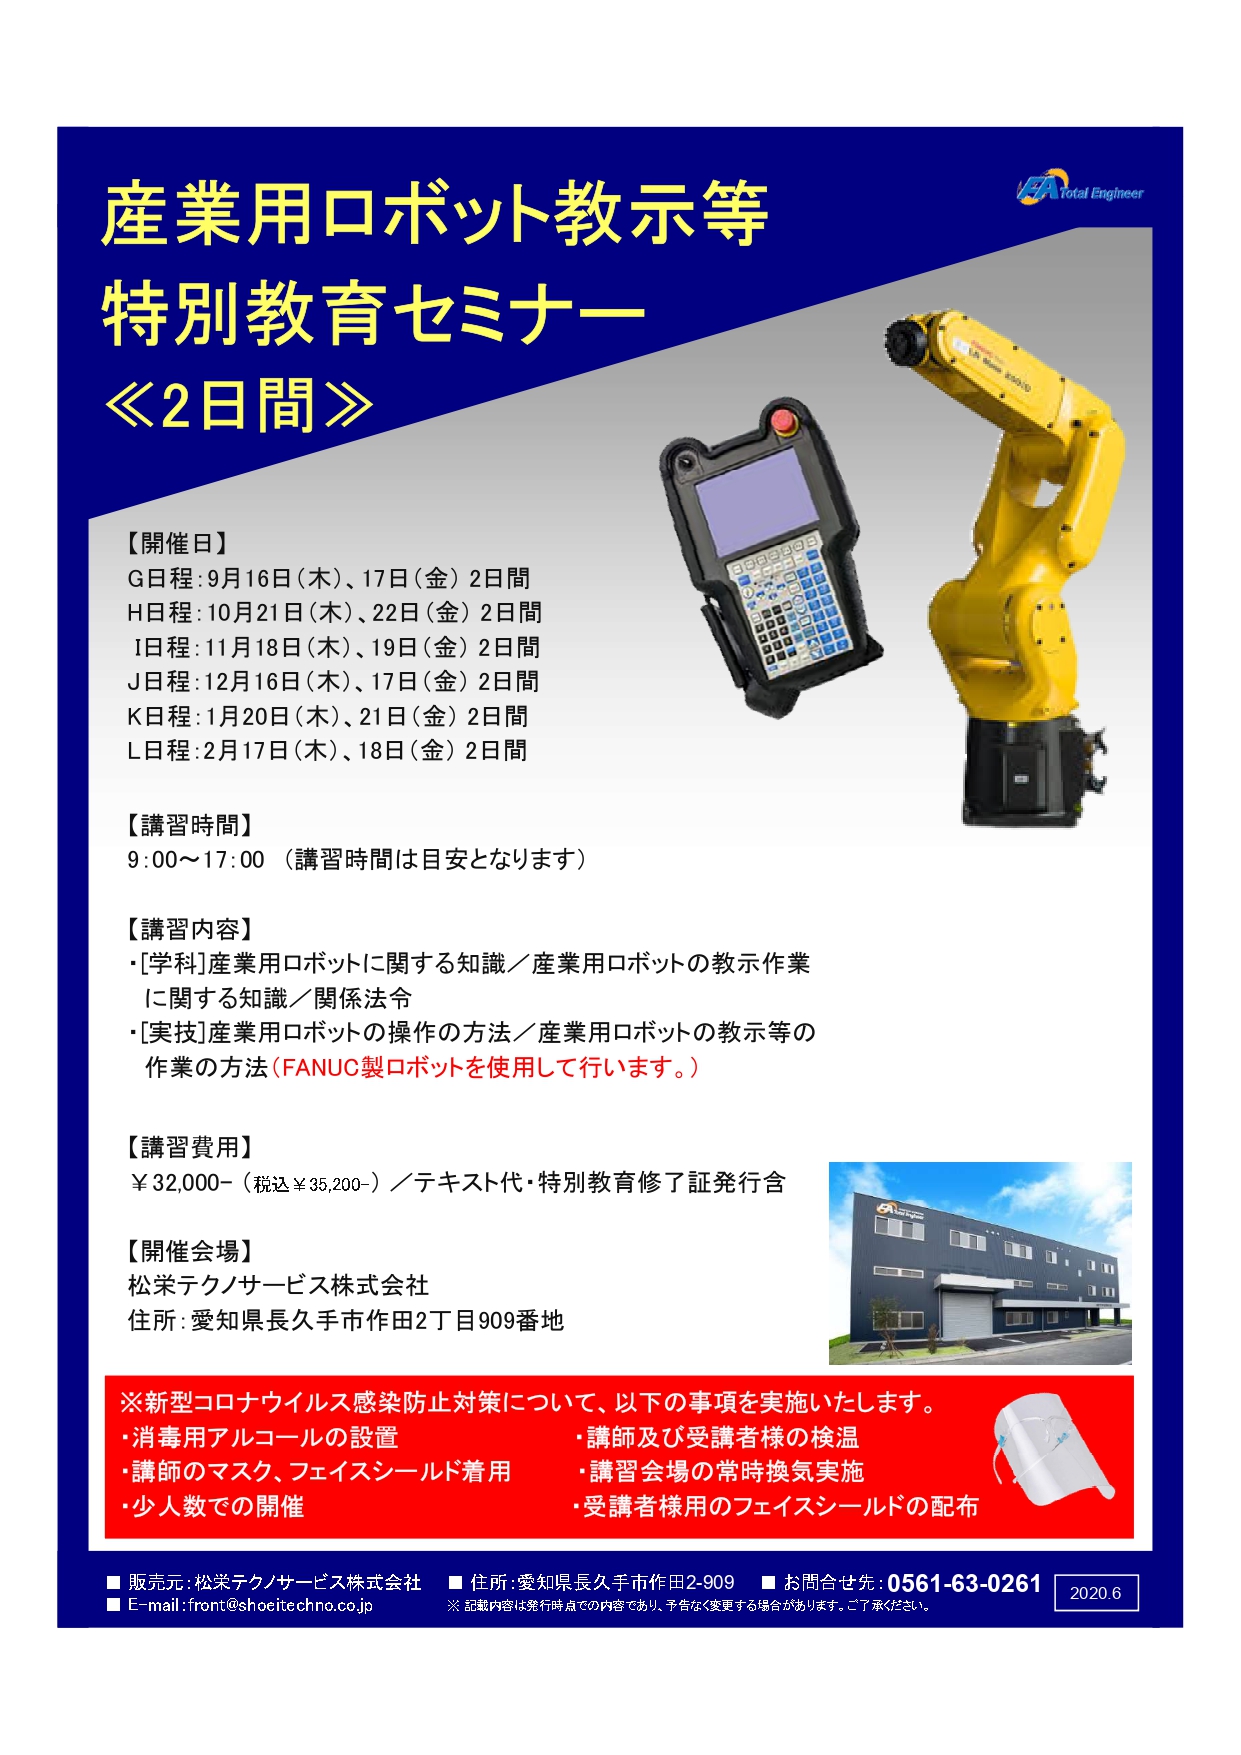 【終了しました】産業用ロボット特別教育（教示等）愛知会場開催のお知らせ【2021年9月～2022年2月】